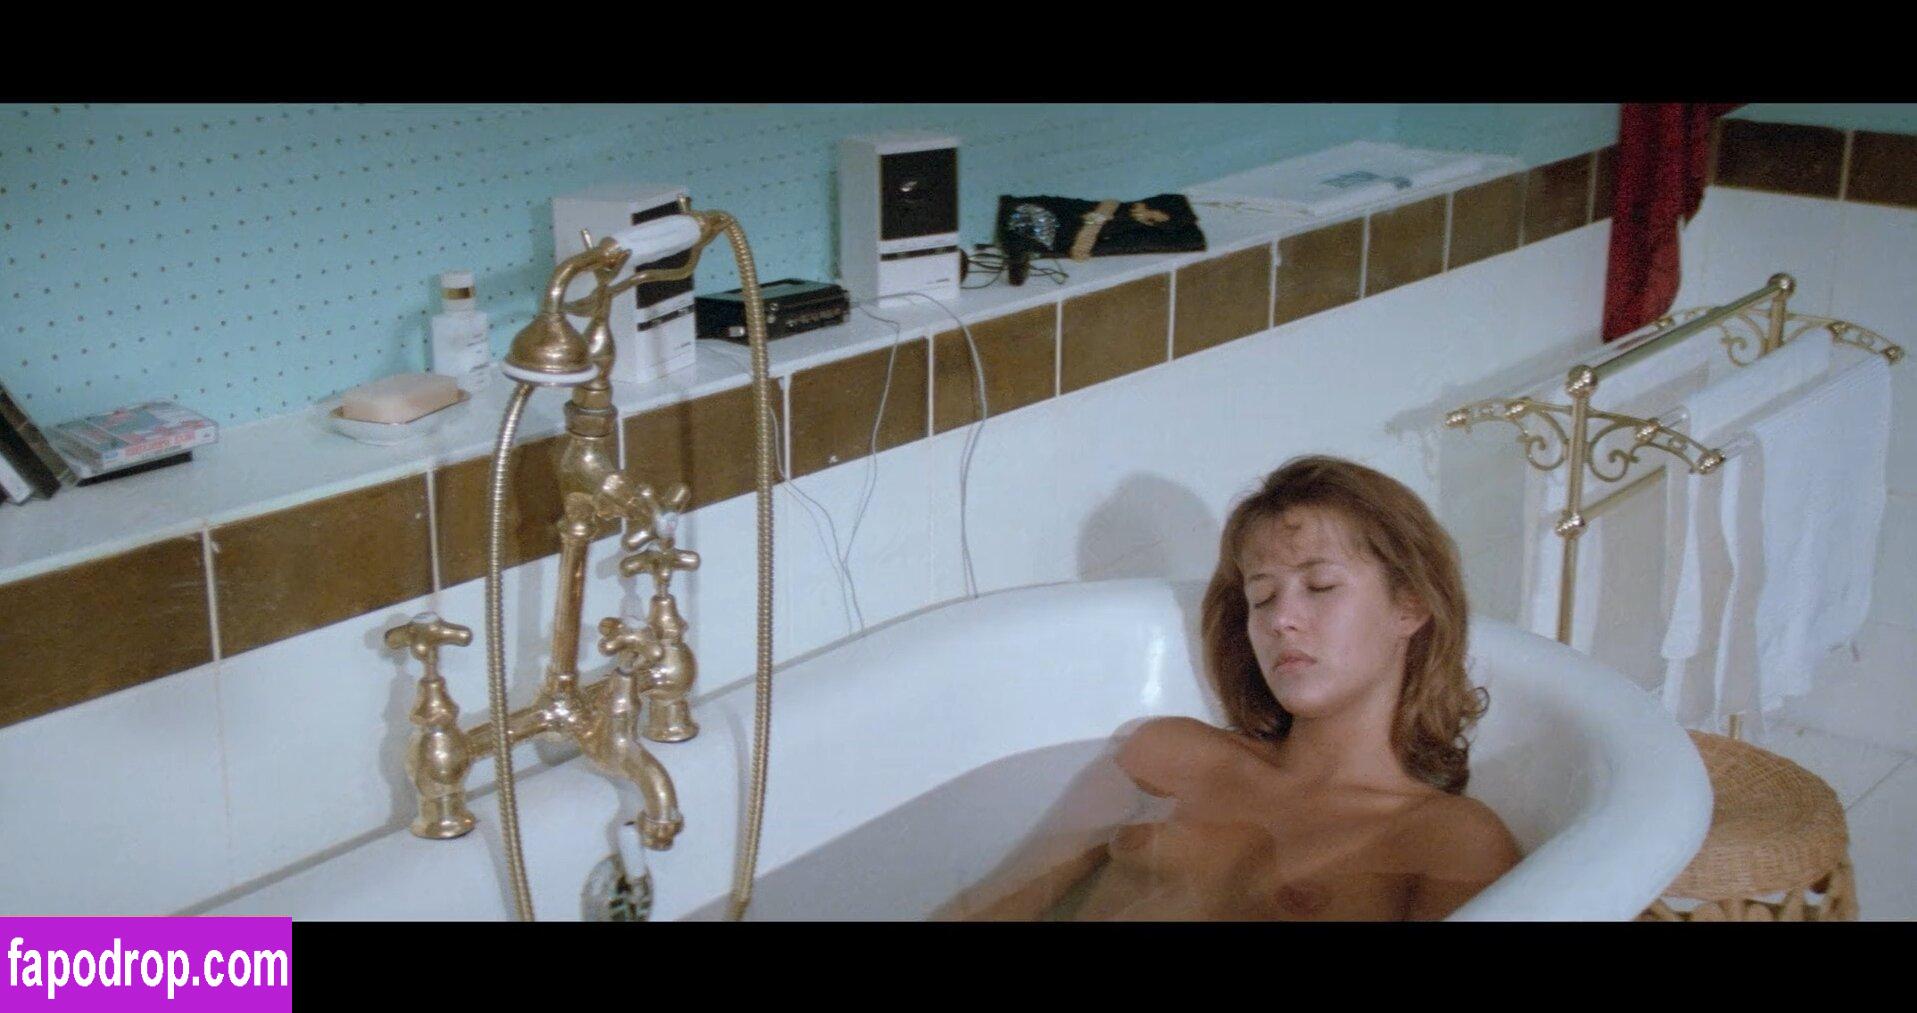 Sophie Marceau / sophiemarceau leak of nude photo #0163 from OnlyFans or Patreon